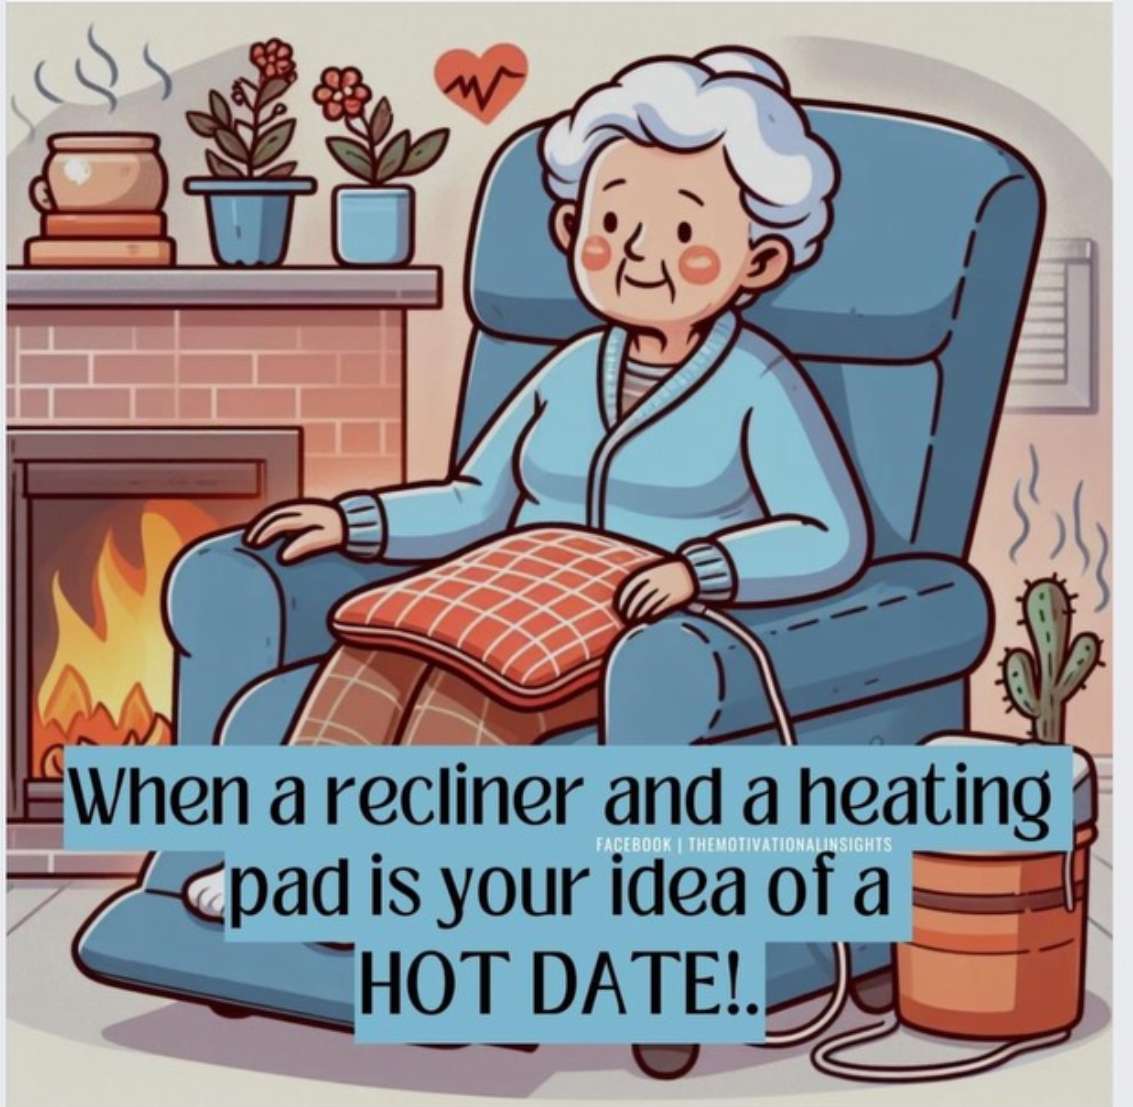 Grand-mère se installe confortablement près de la cheminée. puzzle en ligne